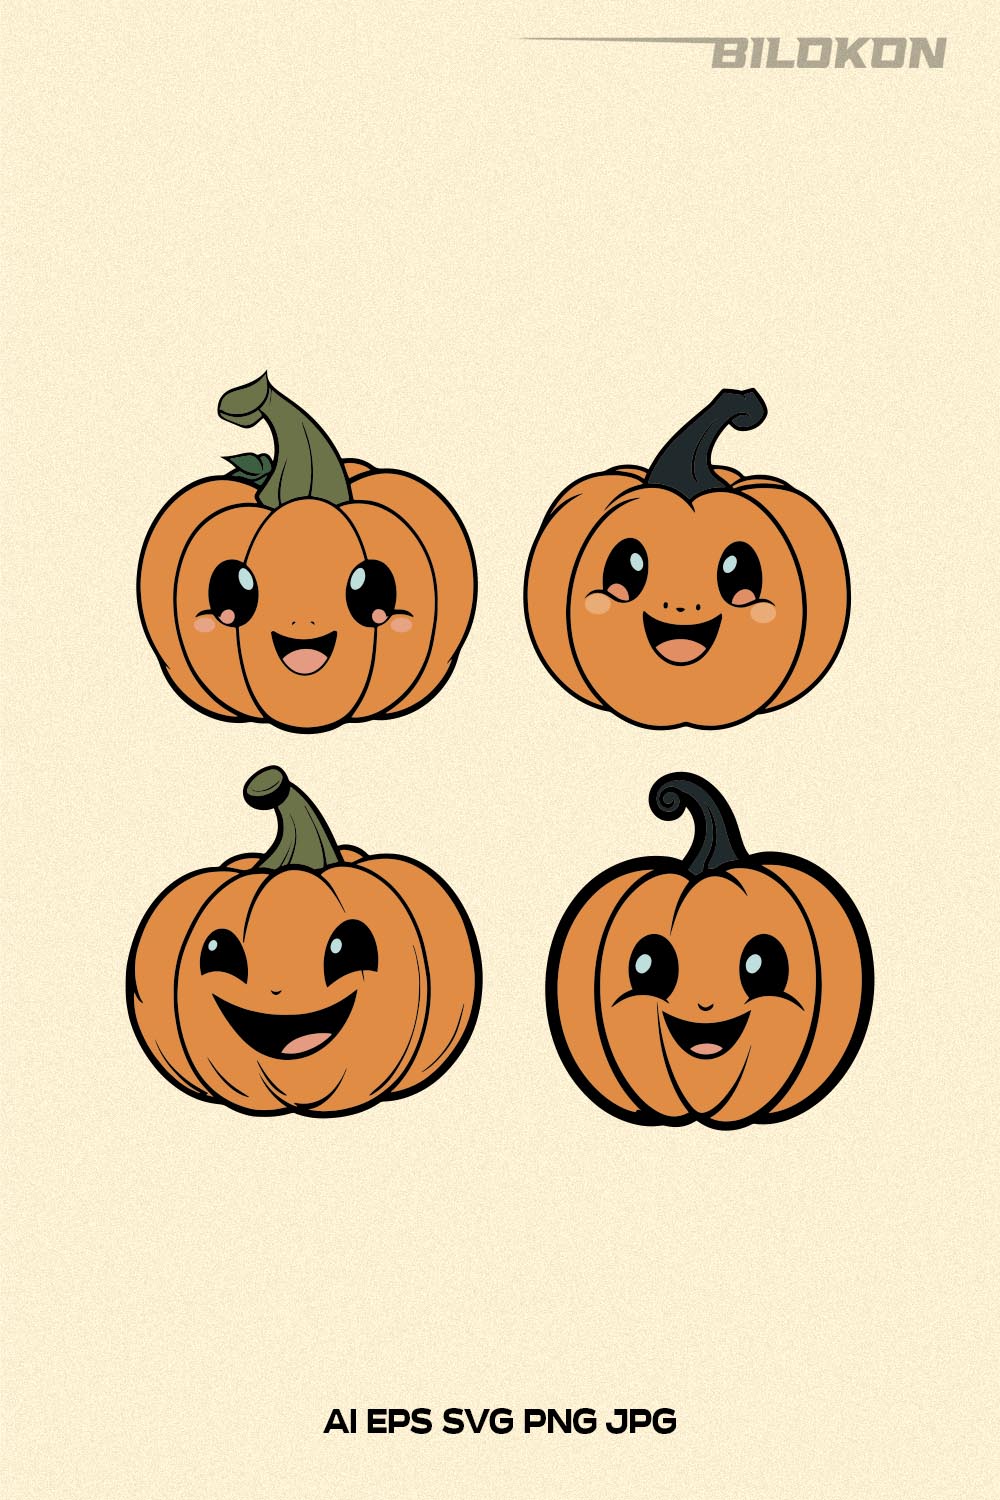 Cartoon Halloween Pumpkin SVG, Halloween Pumpkin Design SVG pinterest preview image.